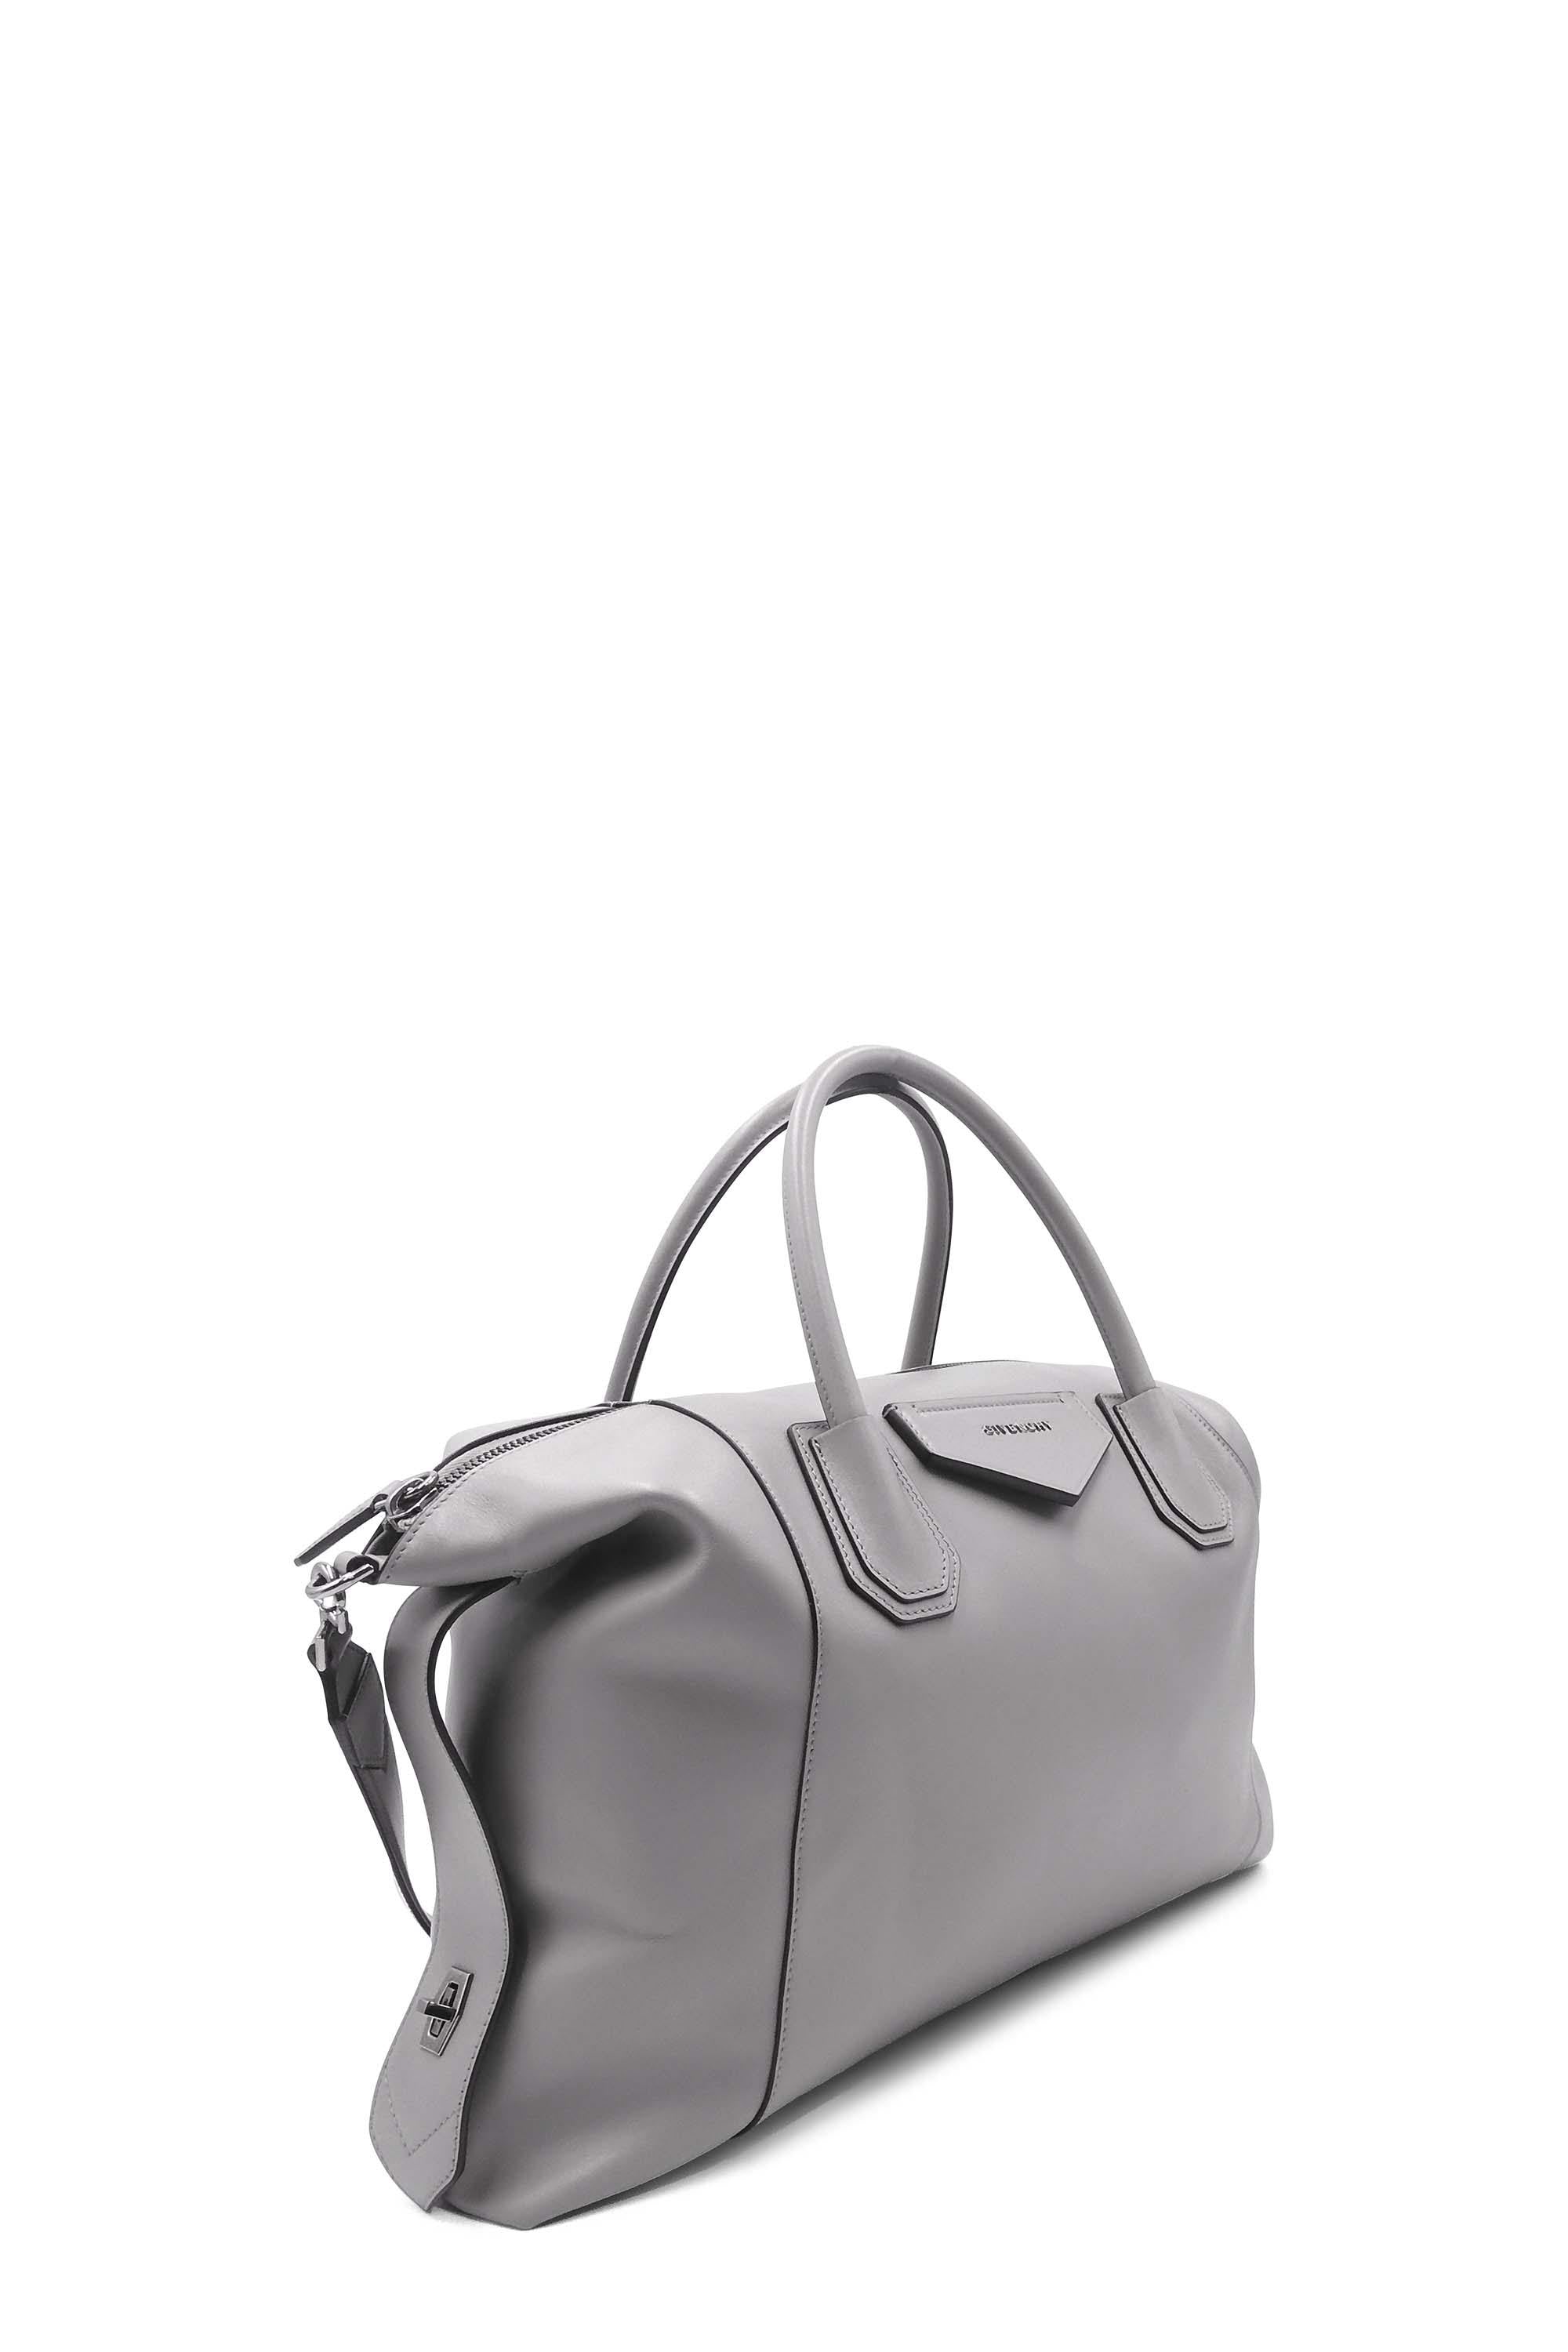 Givenchy Antigona Soft Medium leather tote - ShopStyle Satchels